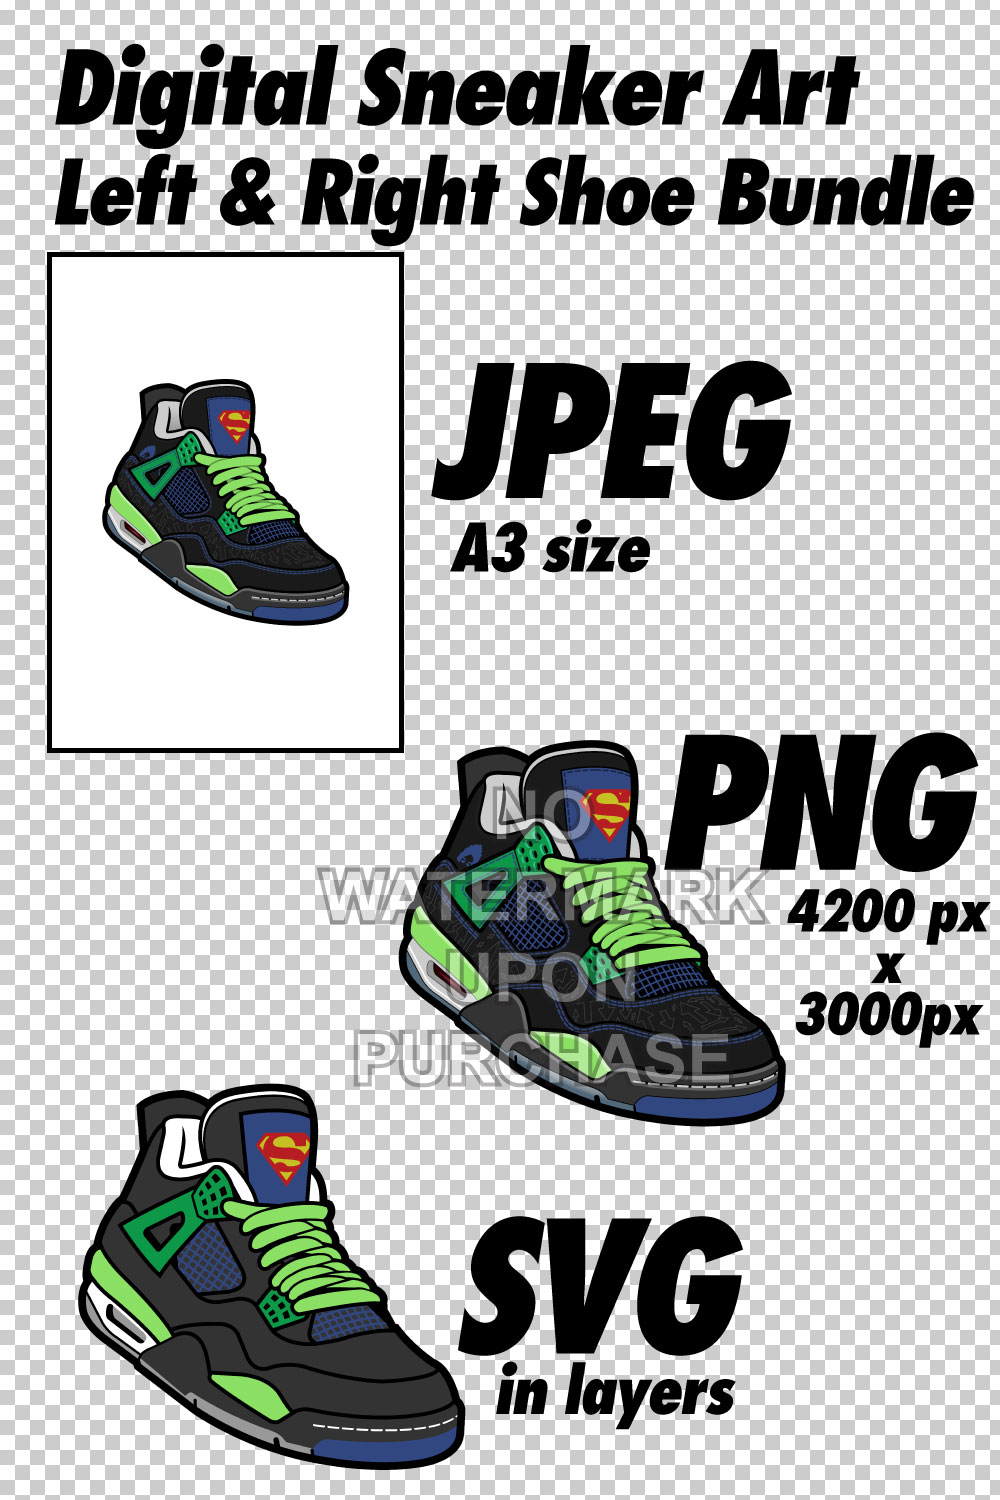 Air Jordan 4 Doernbecher JPEG PNG SVG digital download pinterest preview image.